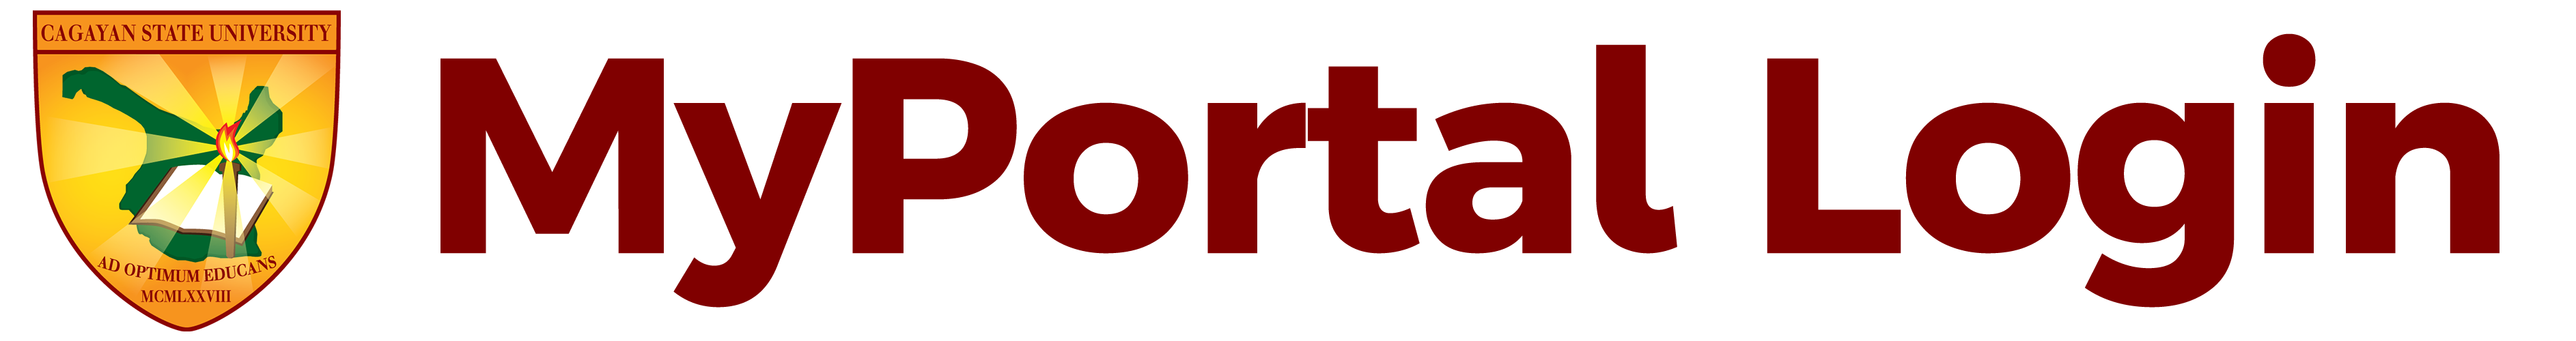 portal login